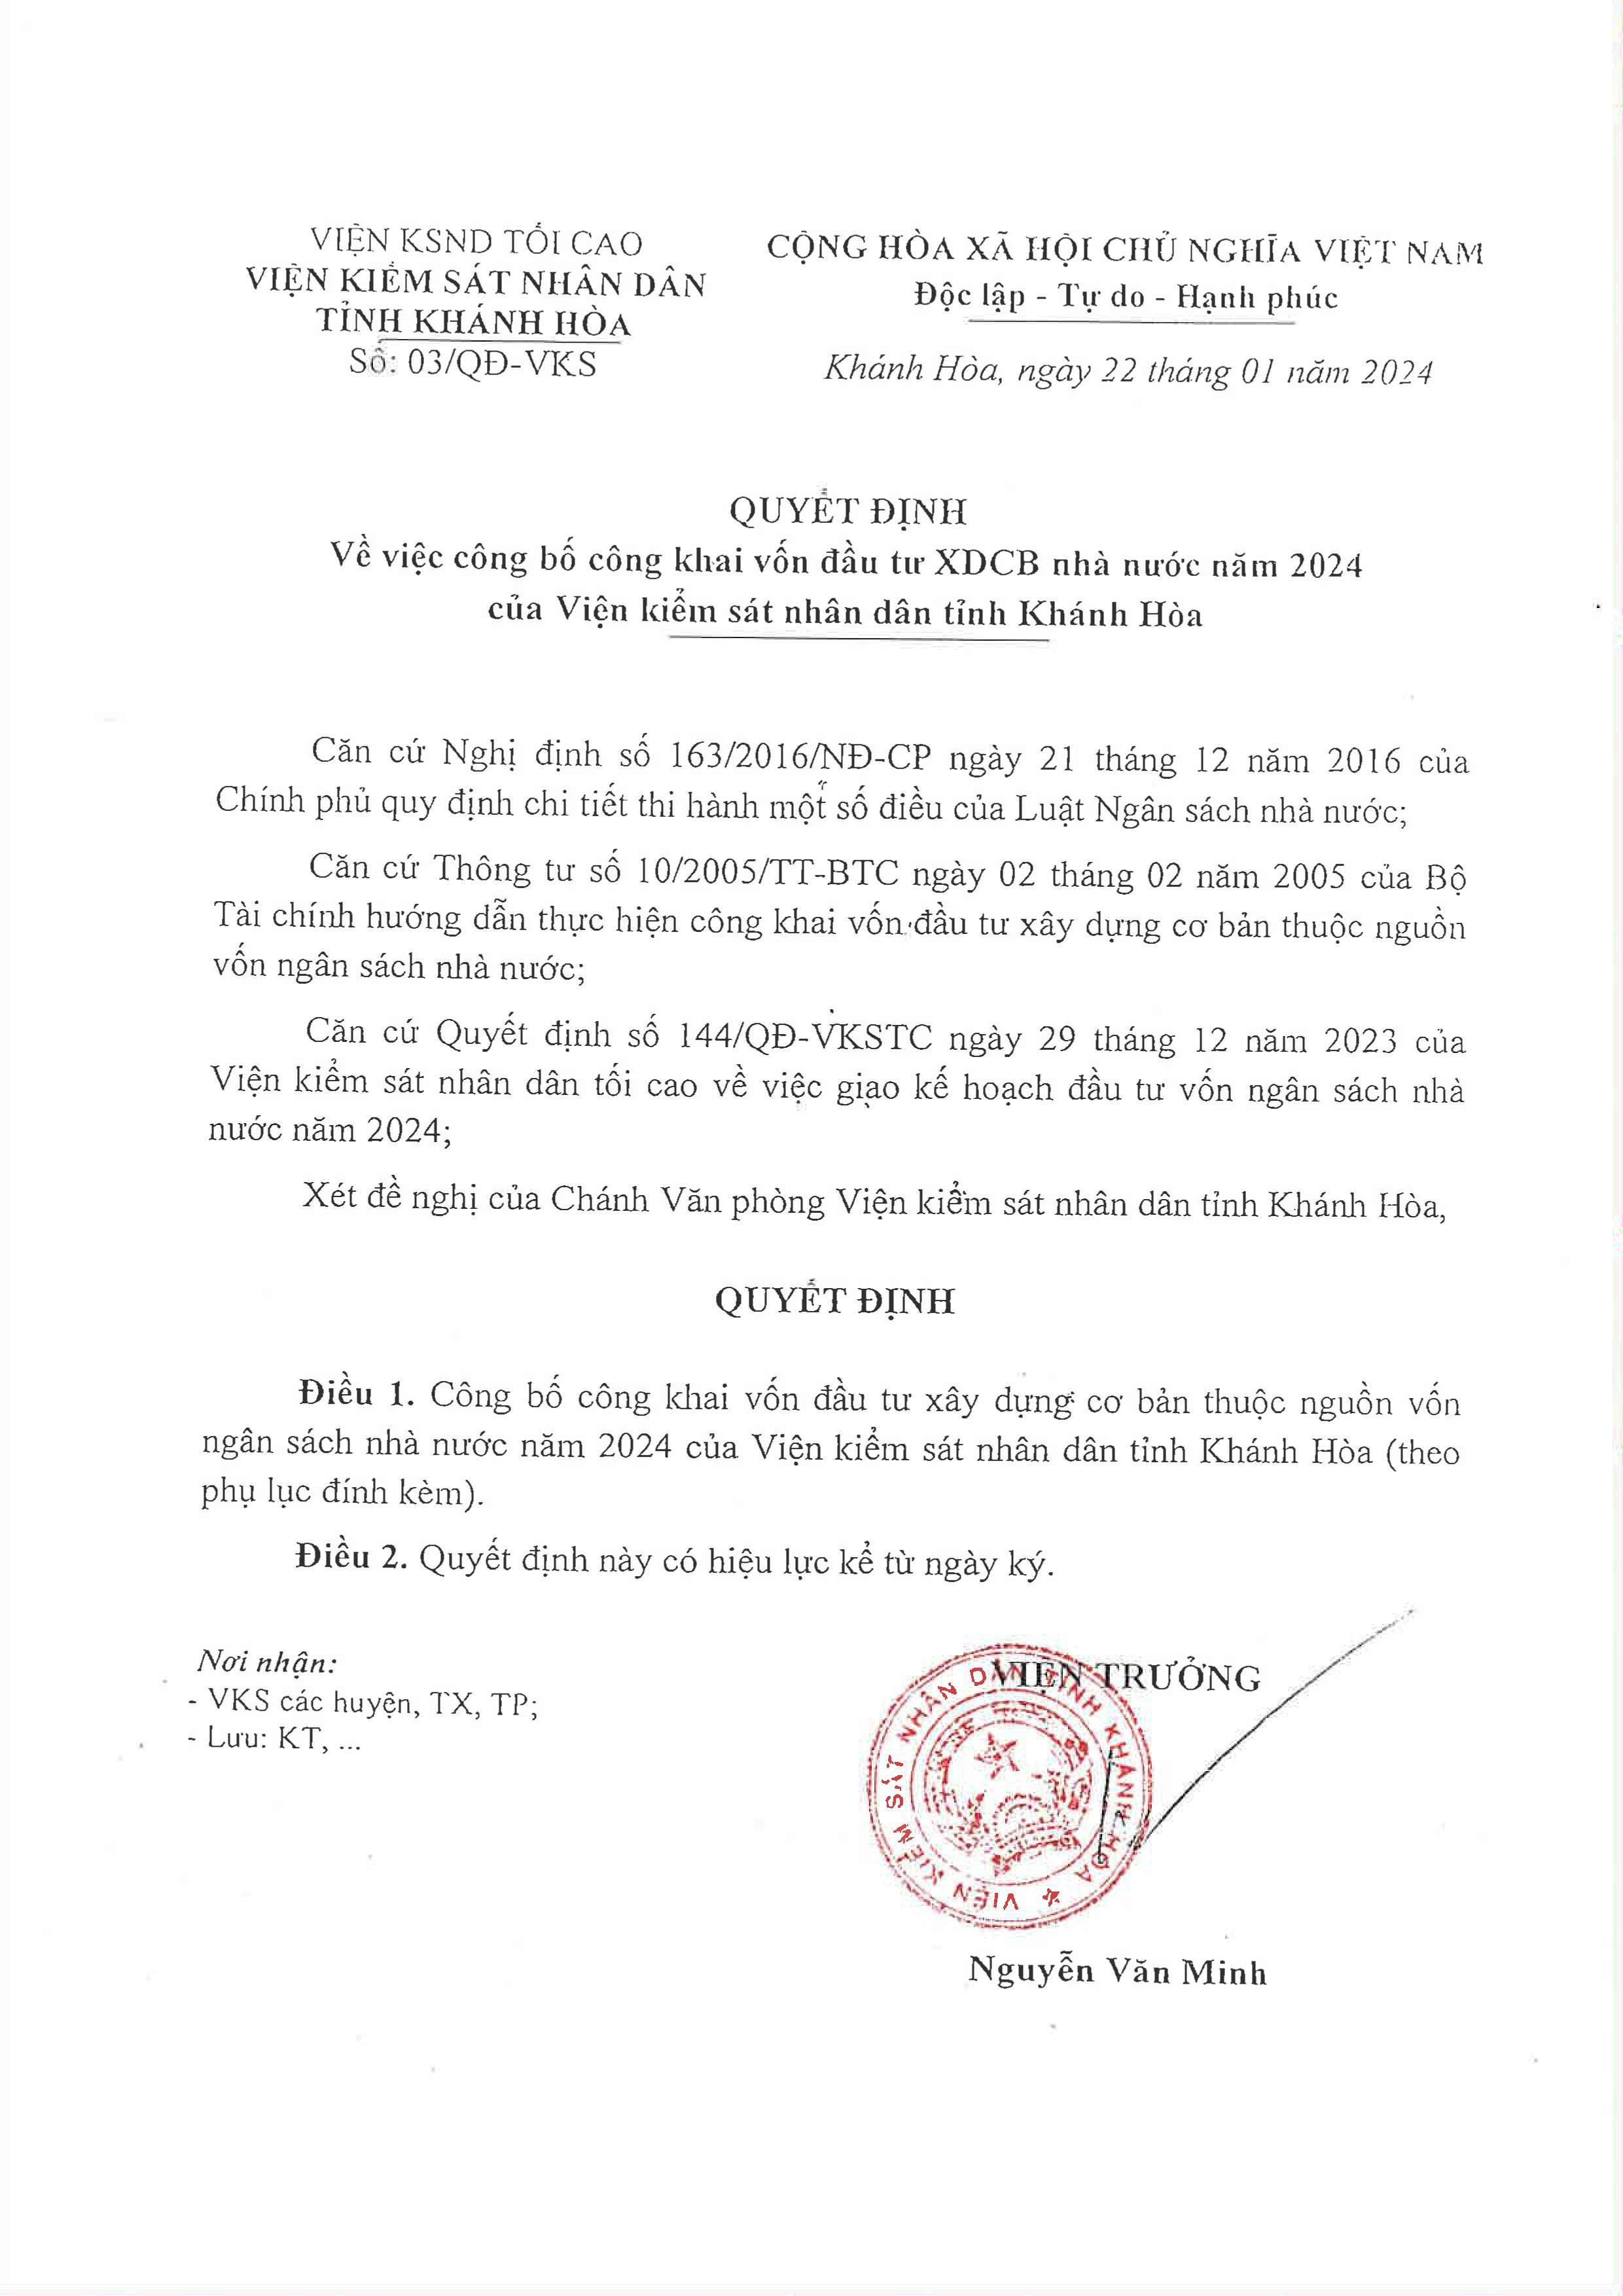 Quyết định công bố công khai vốn đầu tư XDCB nhà nước năm 2024 của Viện kiểm sát nhân dân tỉnh Khánh Hòa